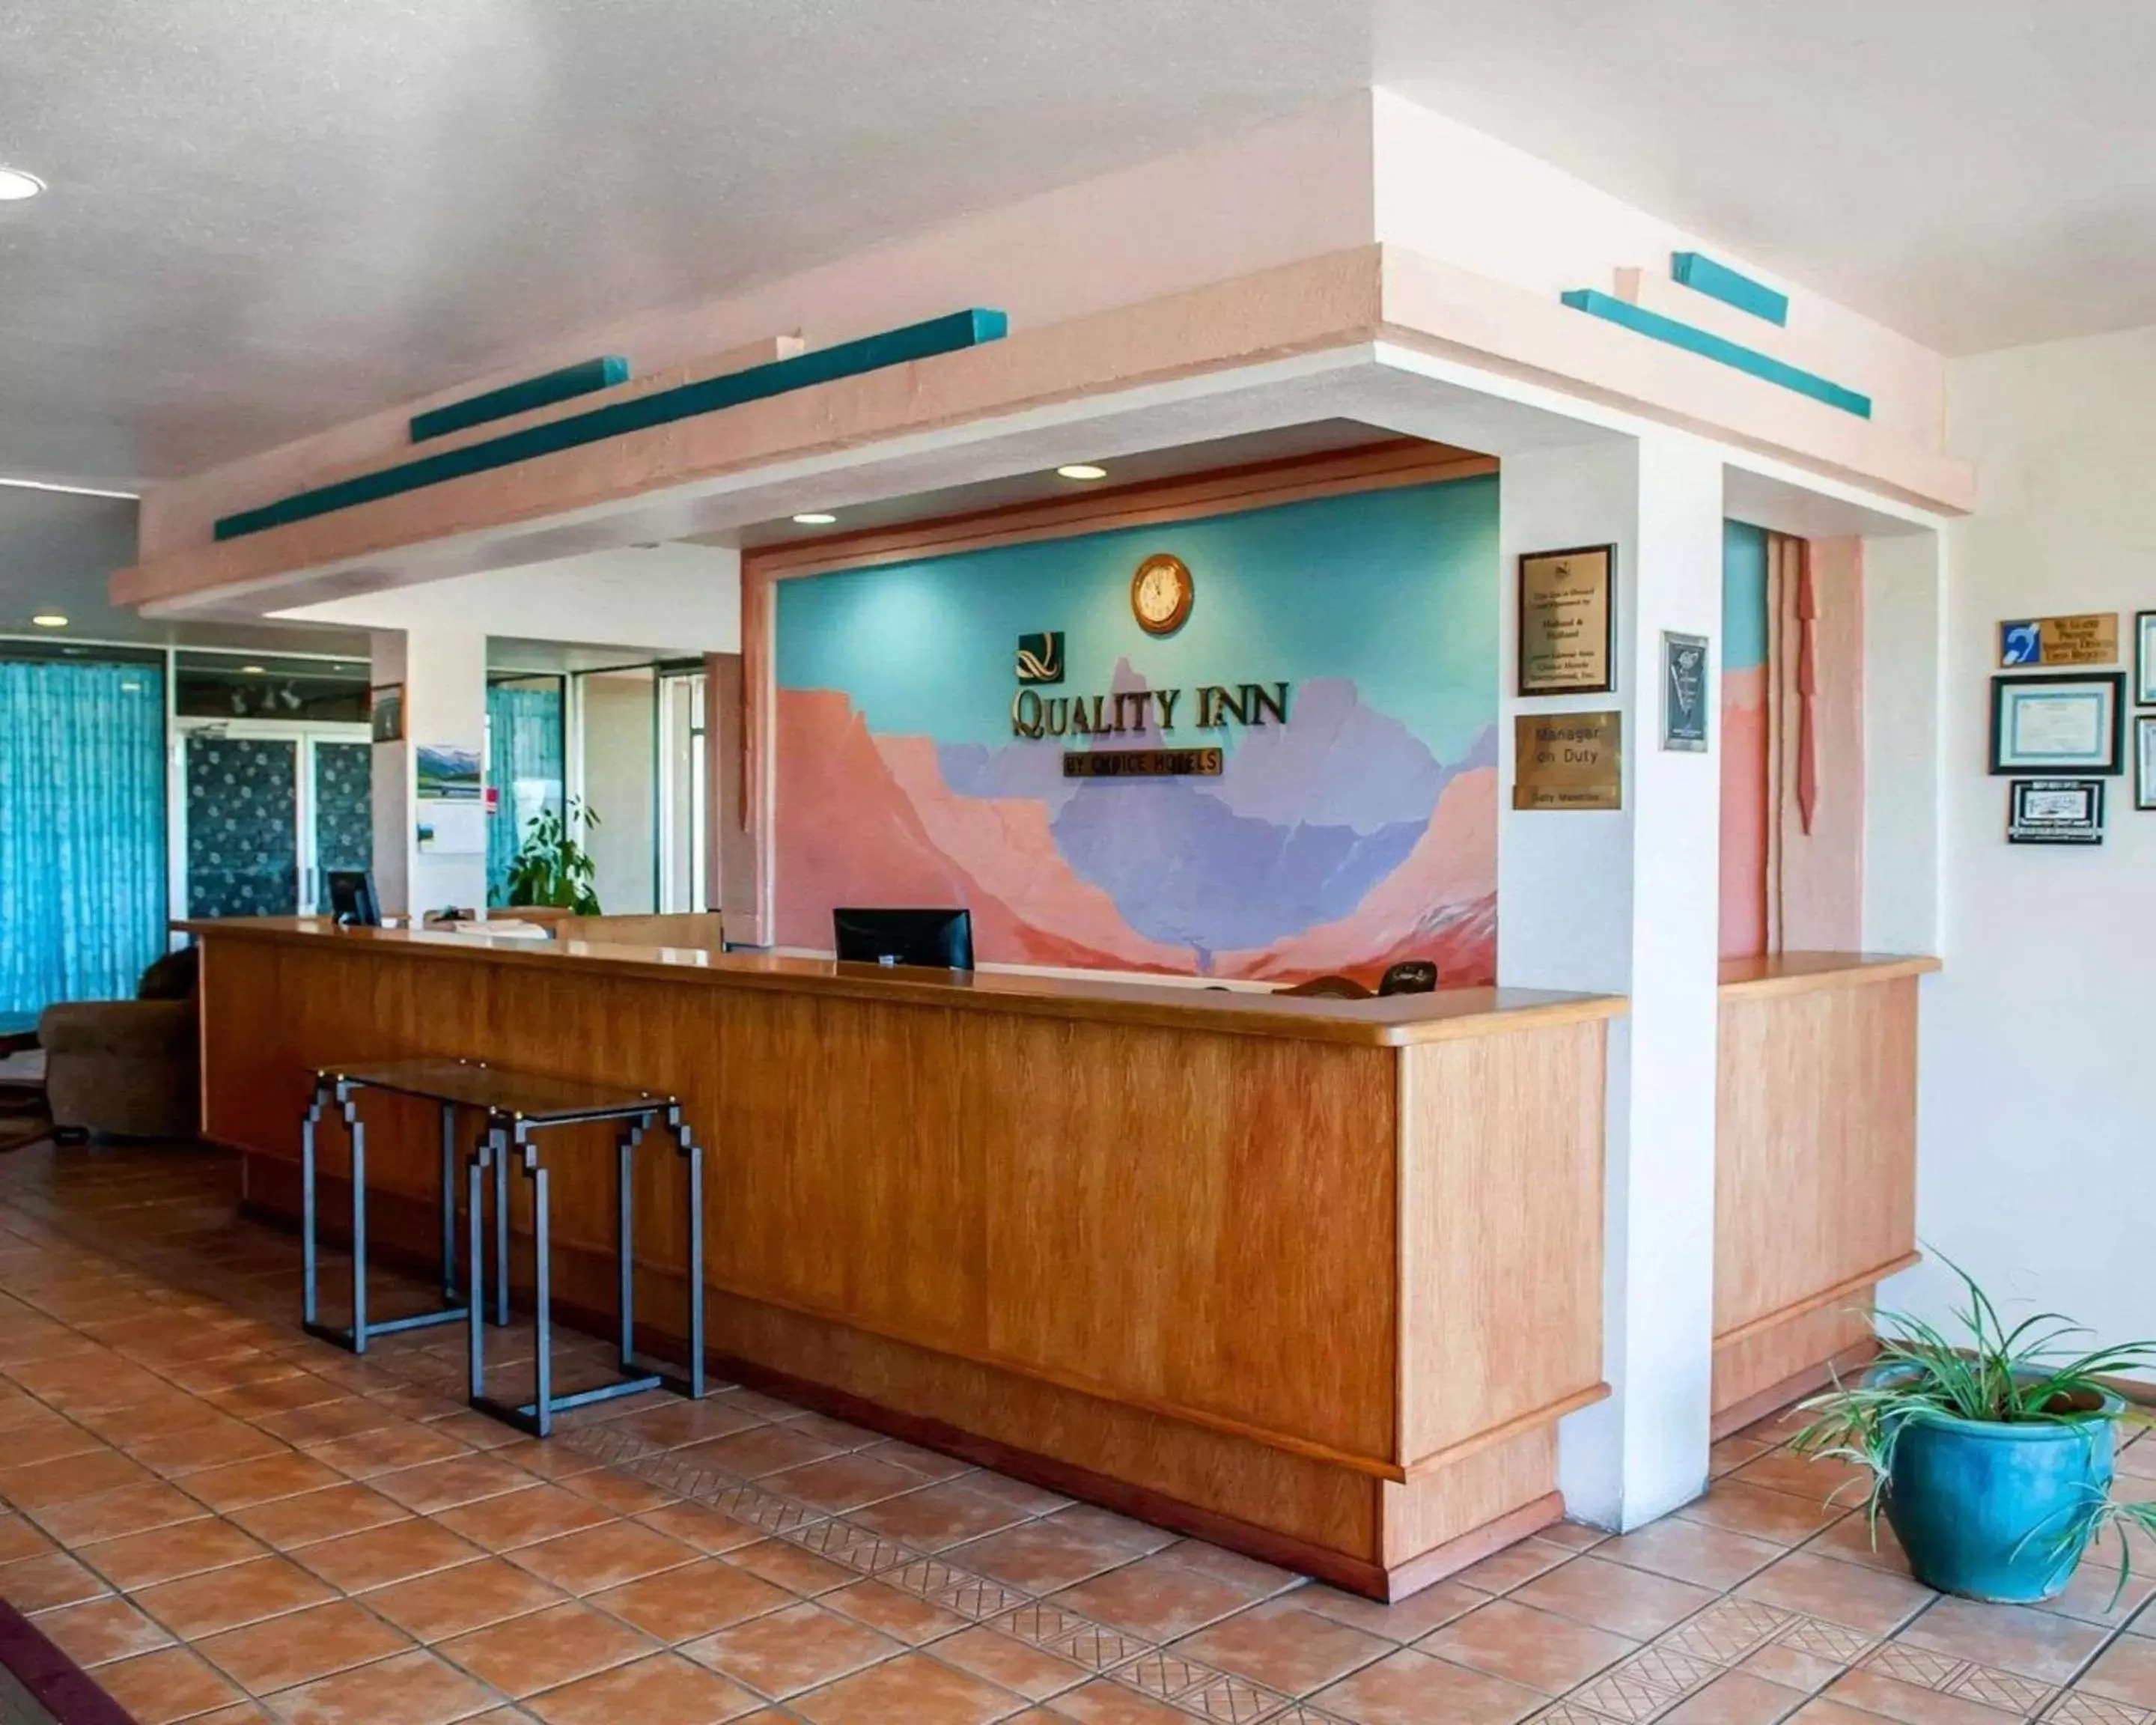 Lobby or reception, Lobby/Reception in Quality Inn Tucumcari